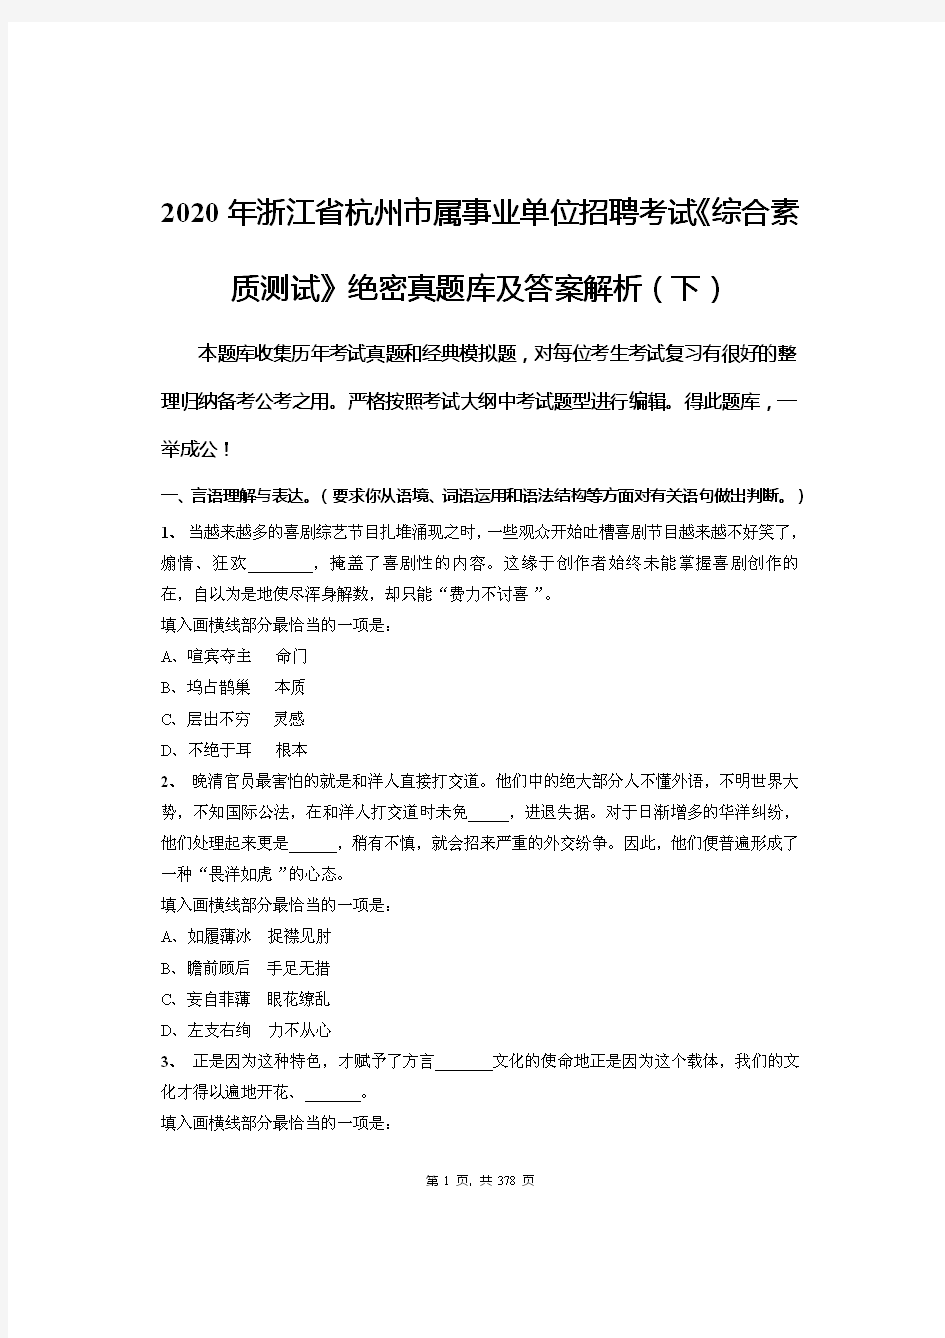 2020年浙江省杭州市属事业单位招聘考试《综合素质测试》绝密真题库及答案解析(下)